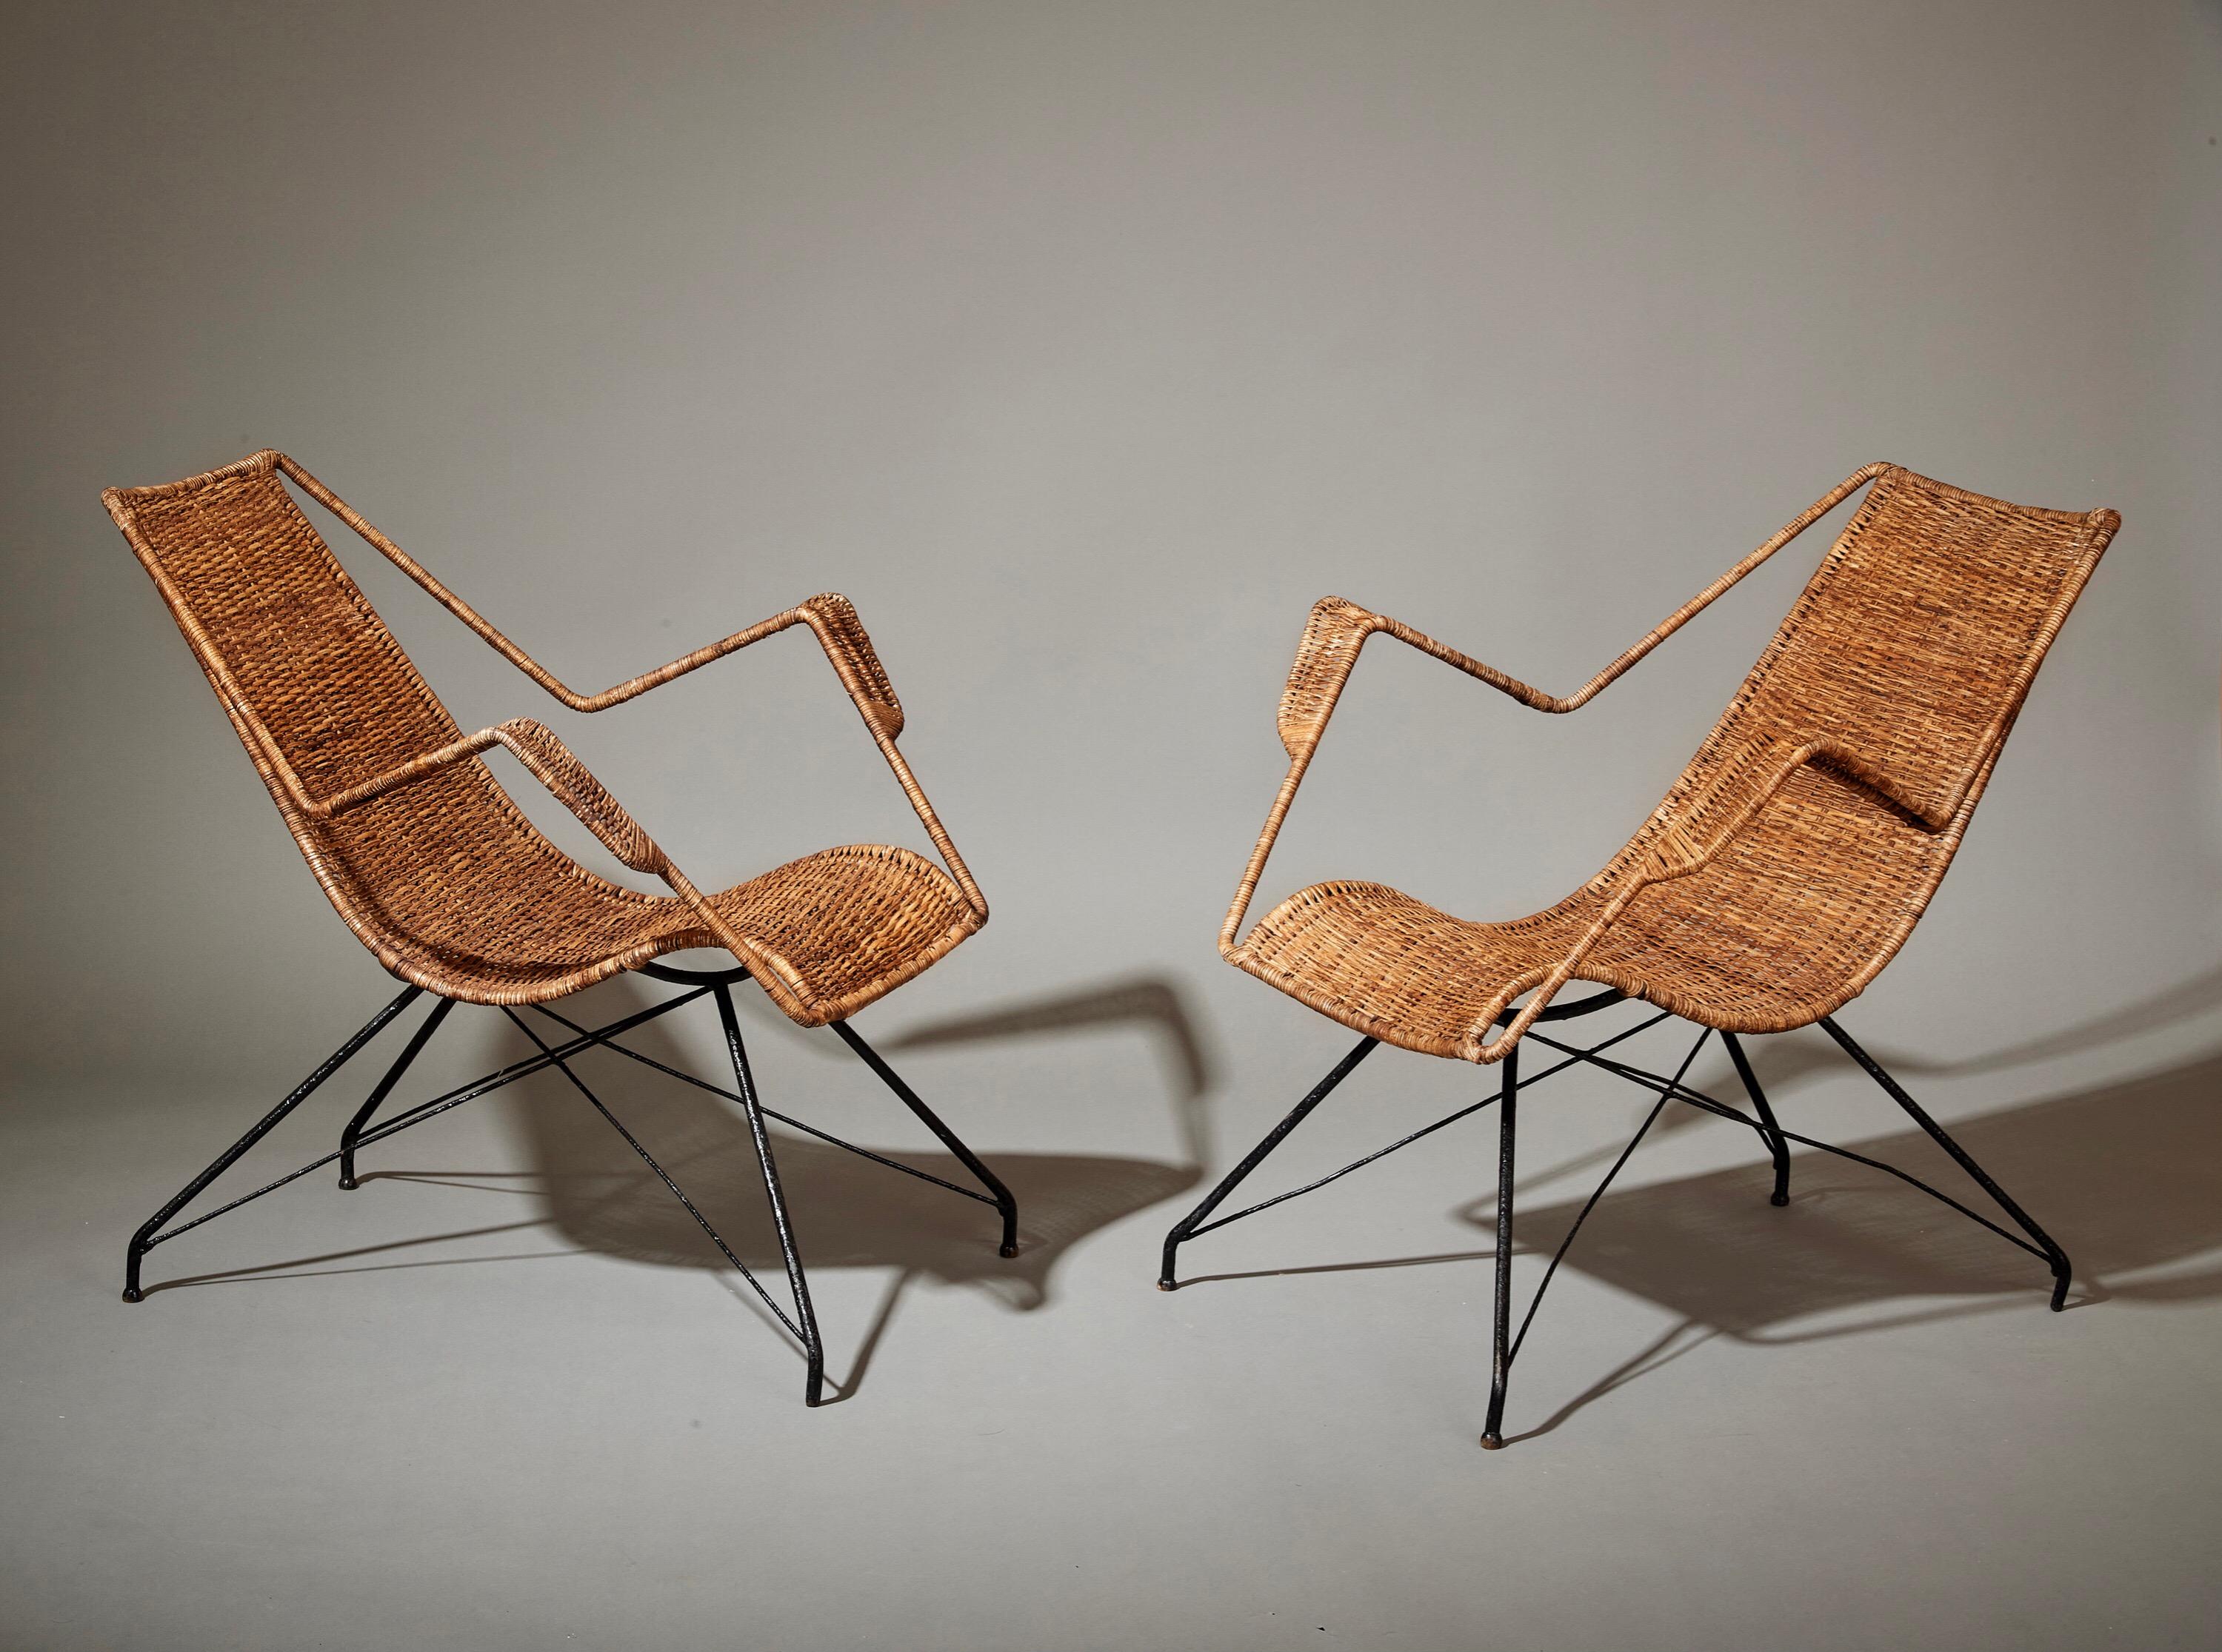 Martin Eisler (1913-1977) et Carlo Hauner (1927-1997) 

Une paire rare et exceptionnelle de chaises de salon de Carlo Hauner et Martin Eisler pour leur société de design brésilienne pionnière, Forma. En osier avec des bras en escalier et des pieds